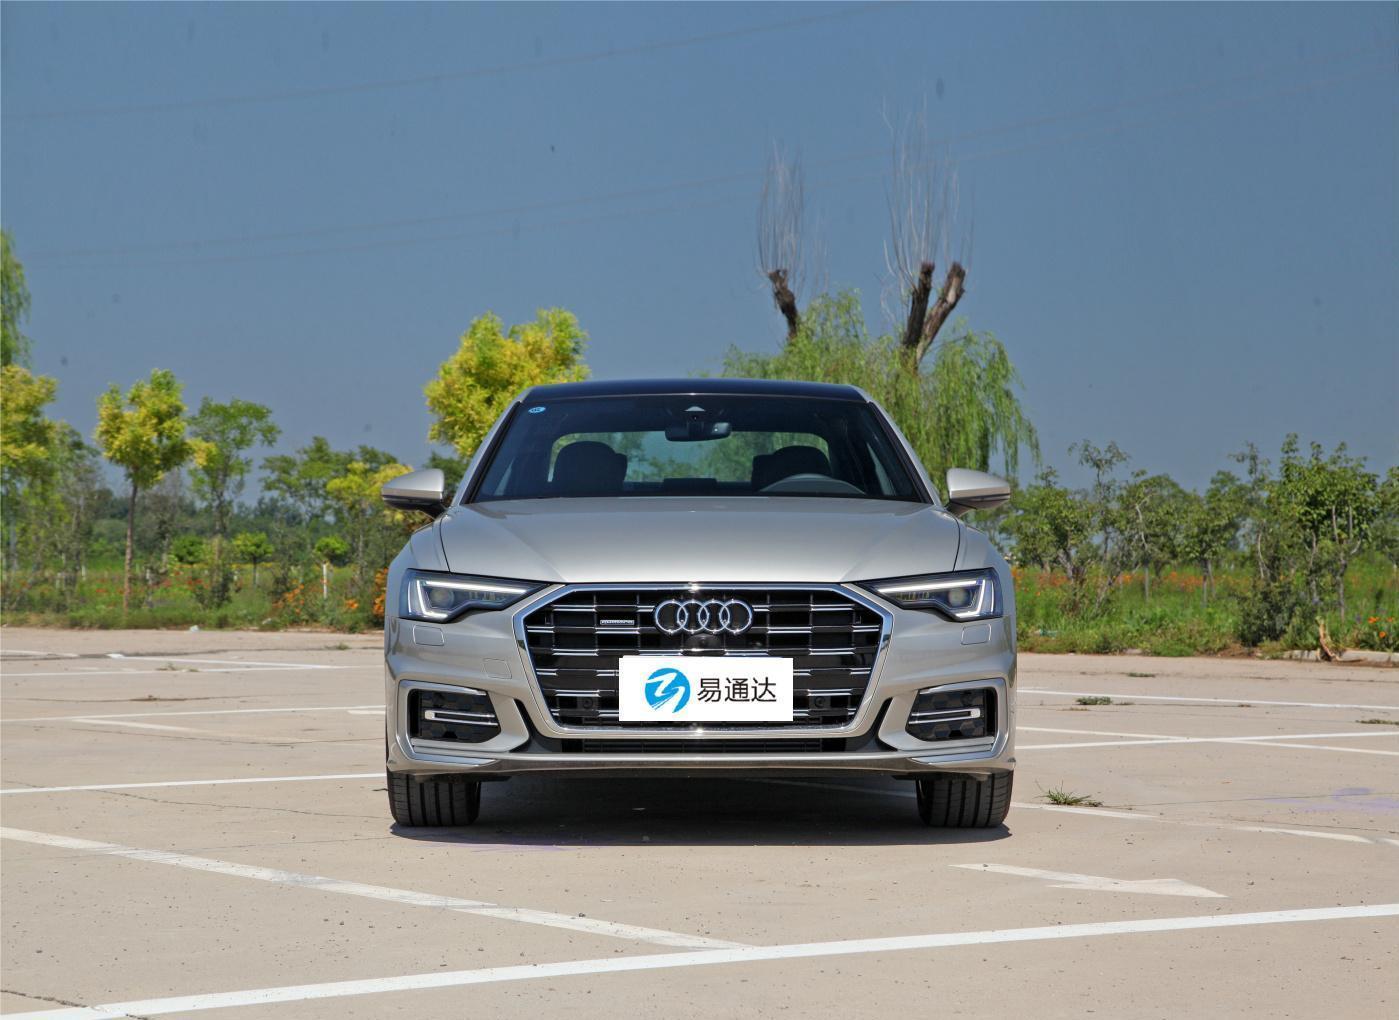 Audi A6L Fuel vehicles Headstock